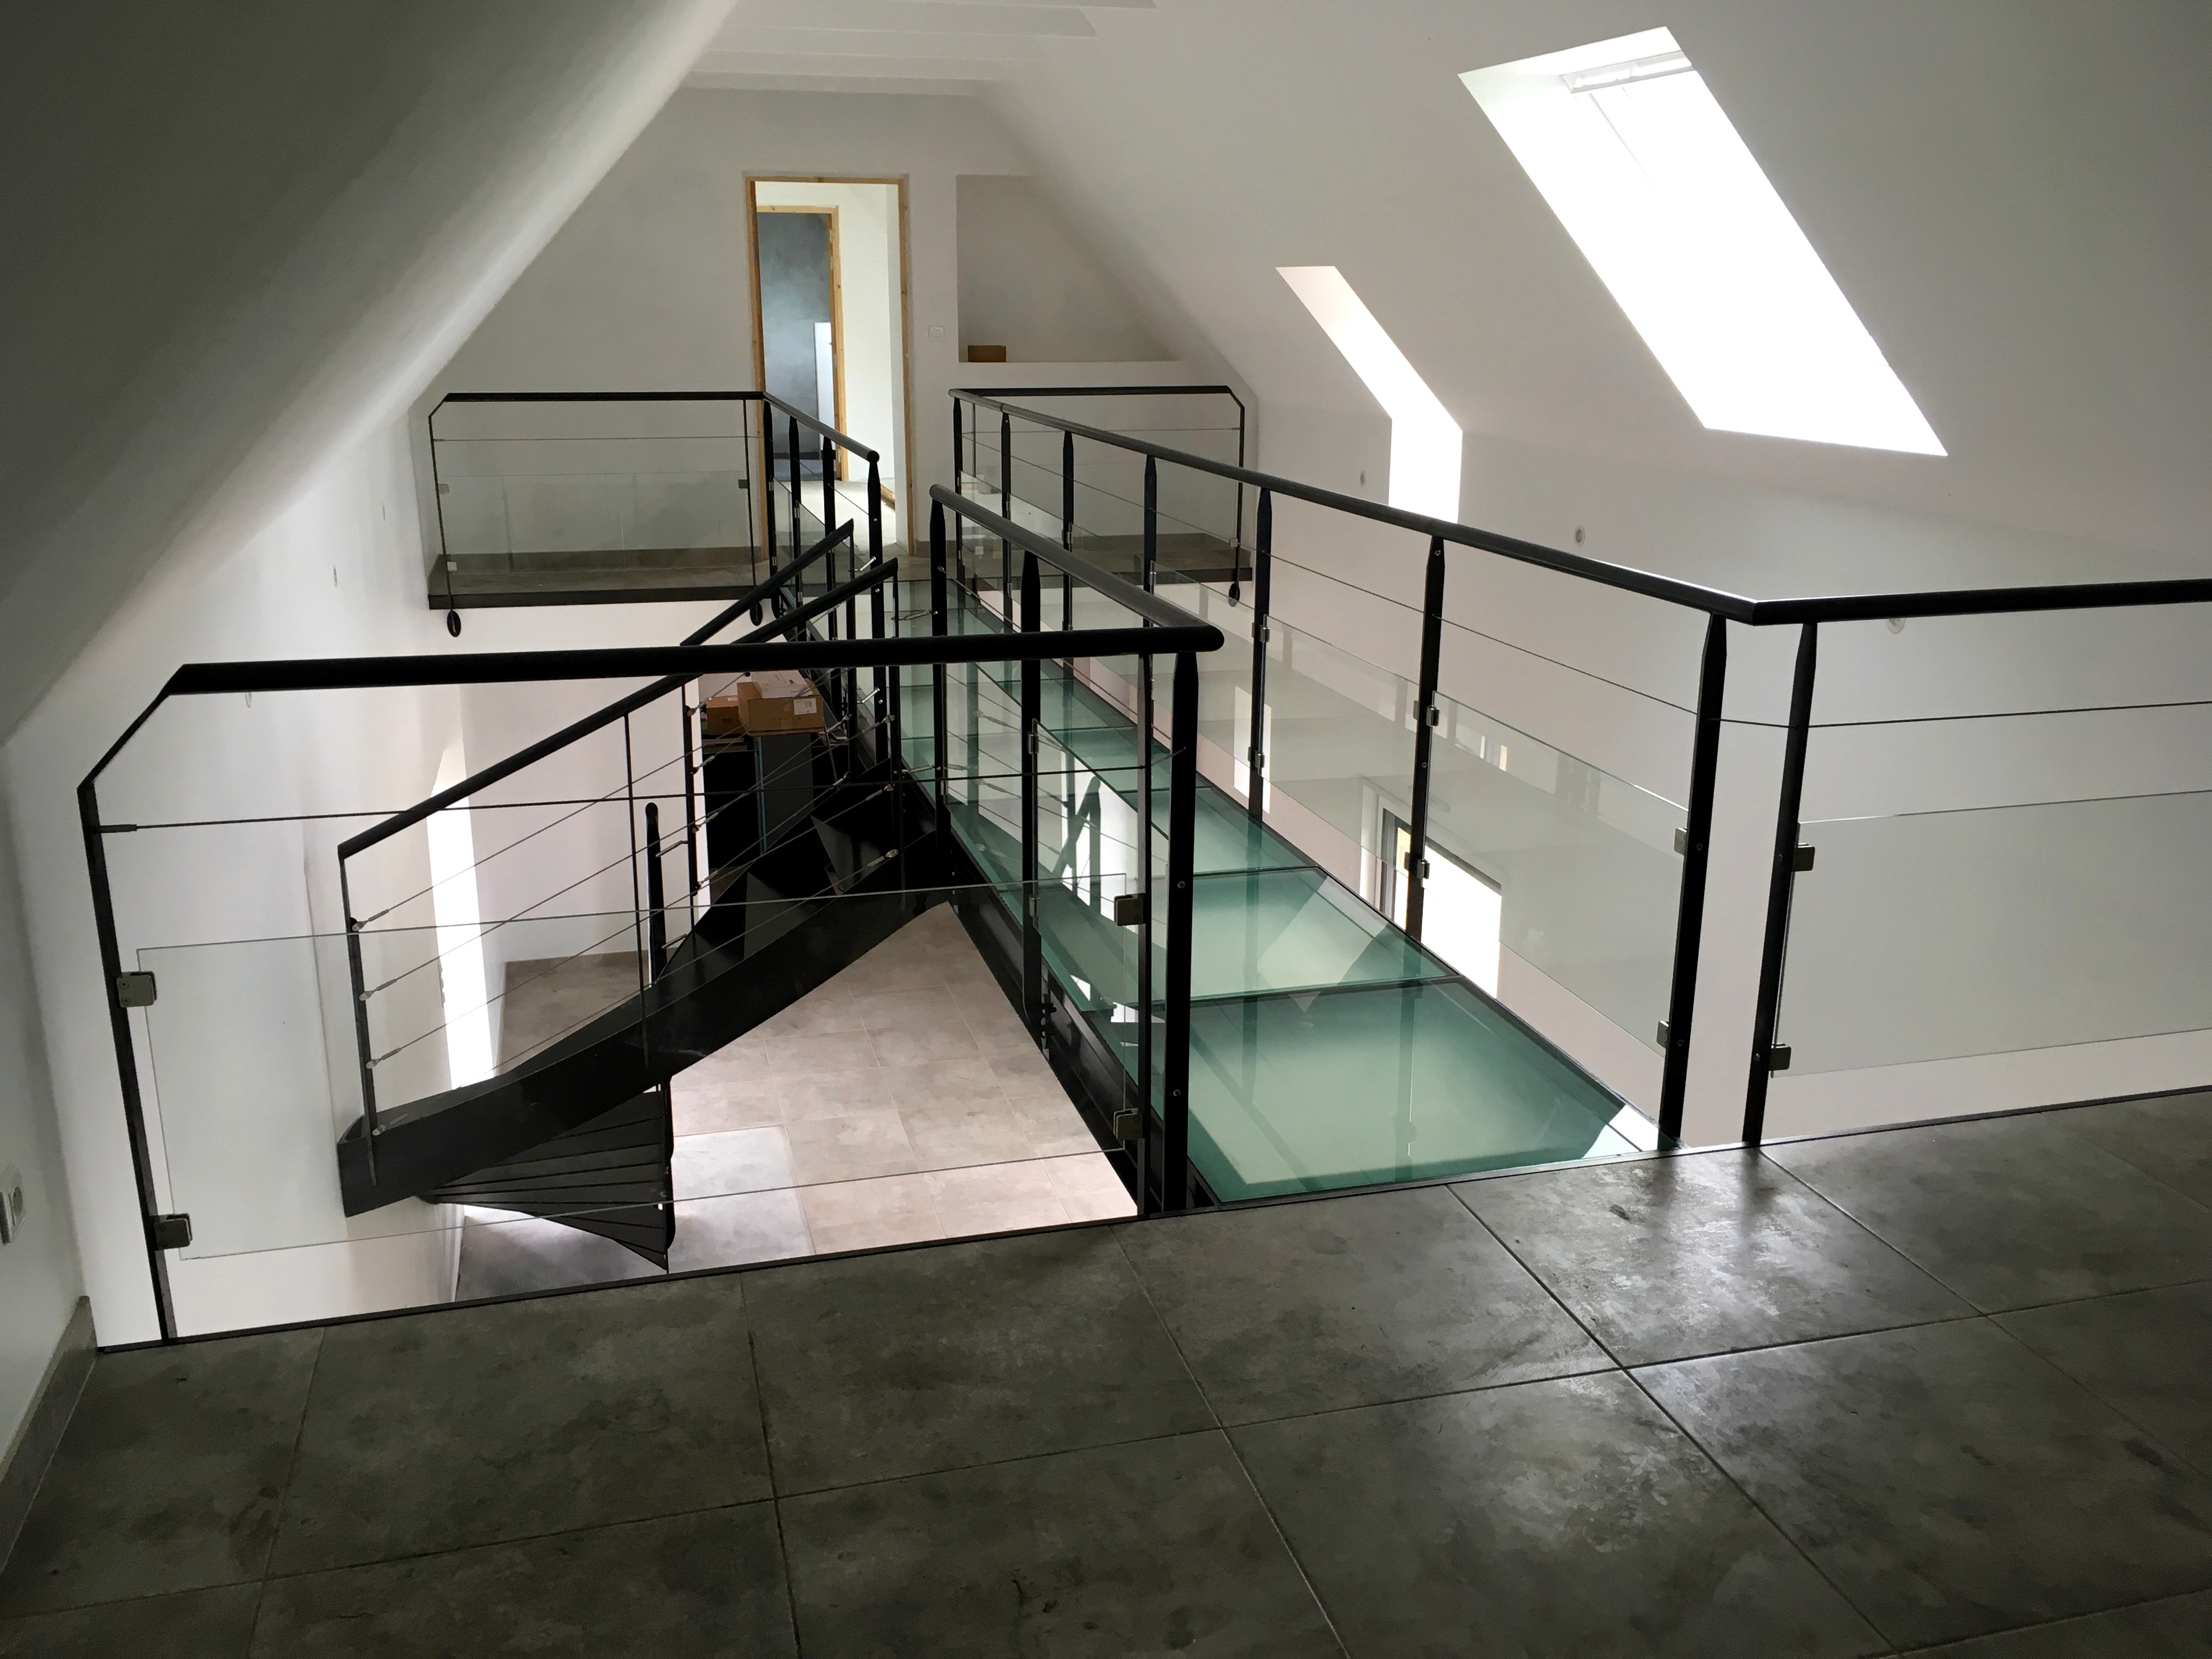 Passerelle suspendue avec escalier métallique - Art Métal Concept